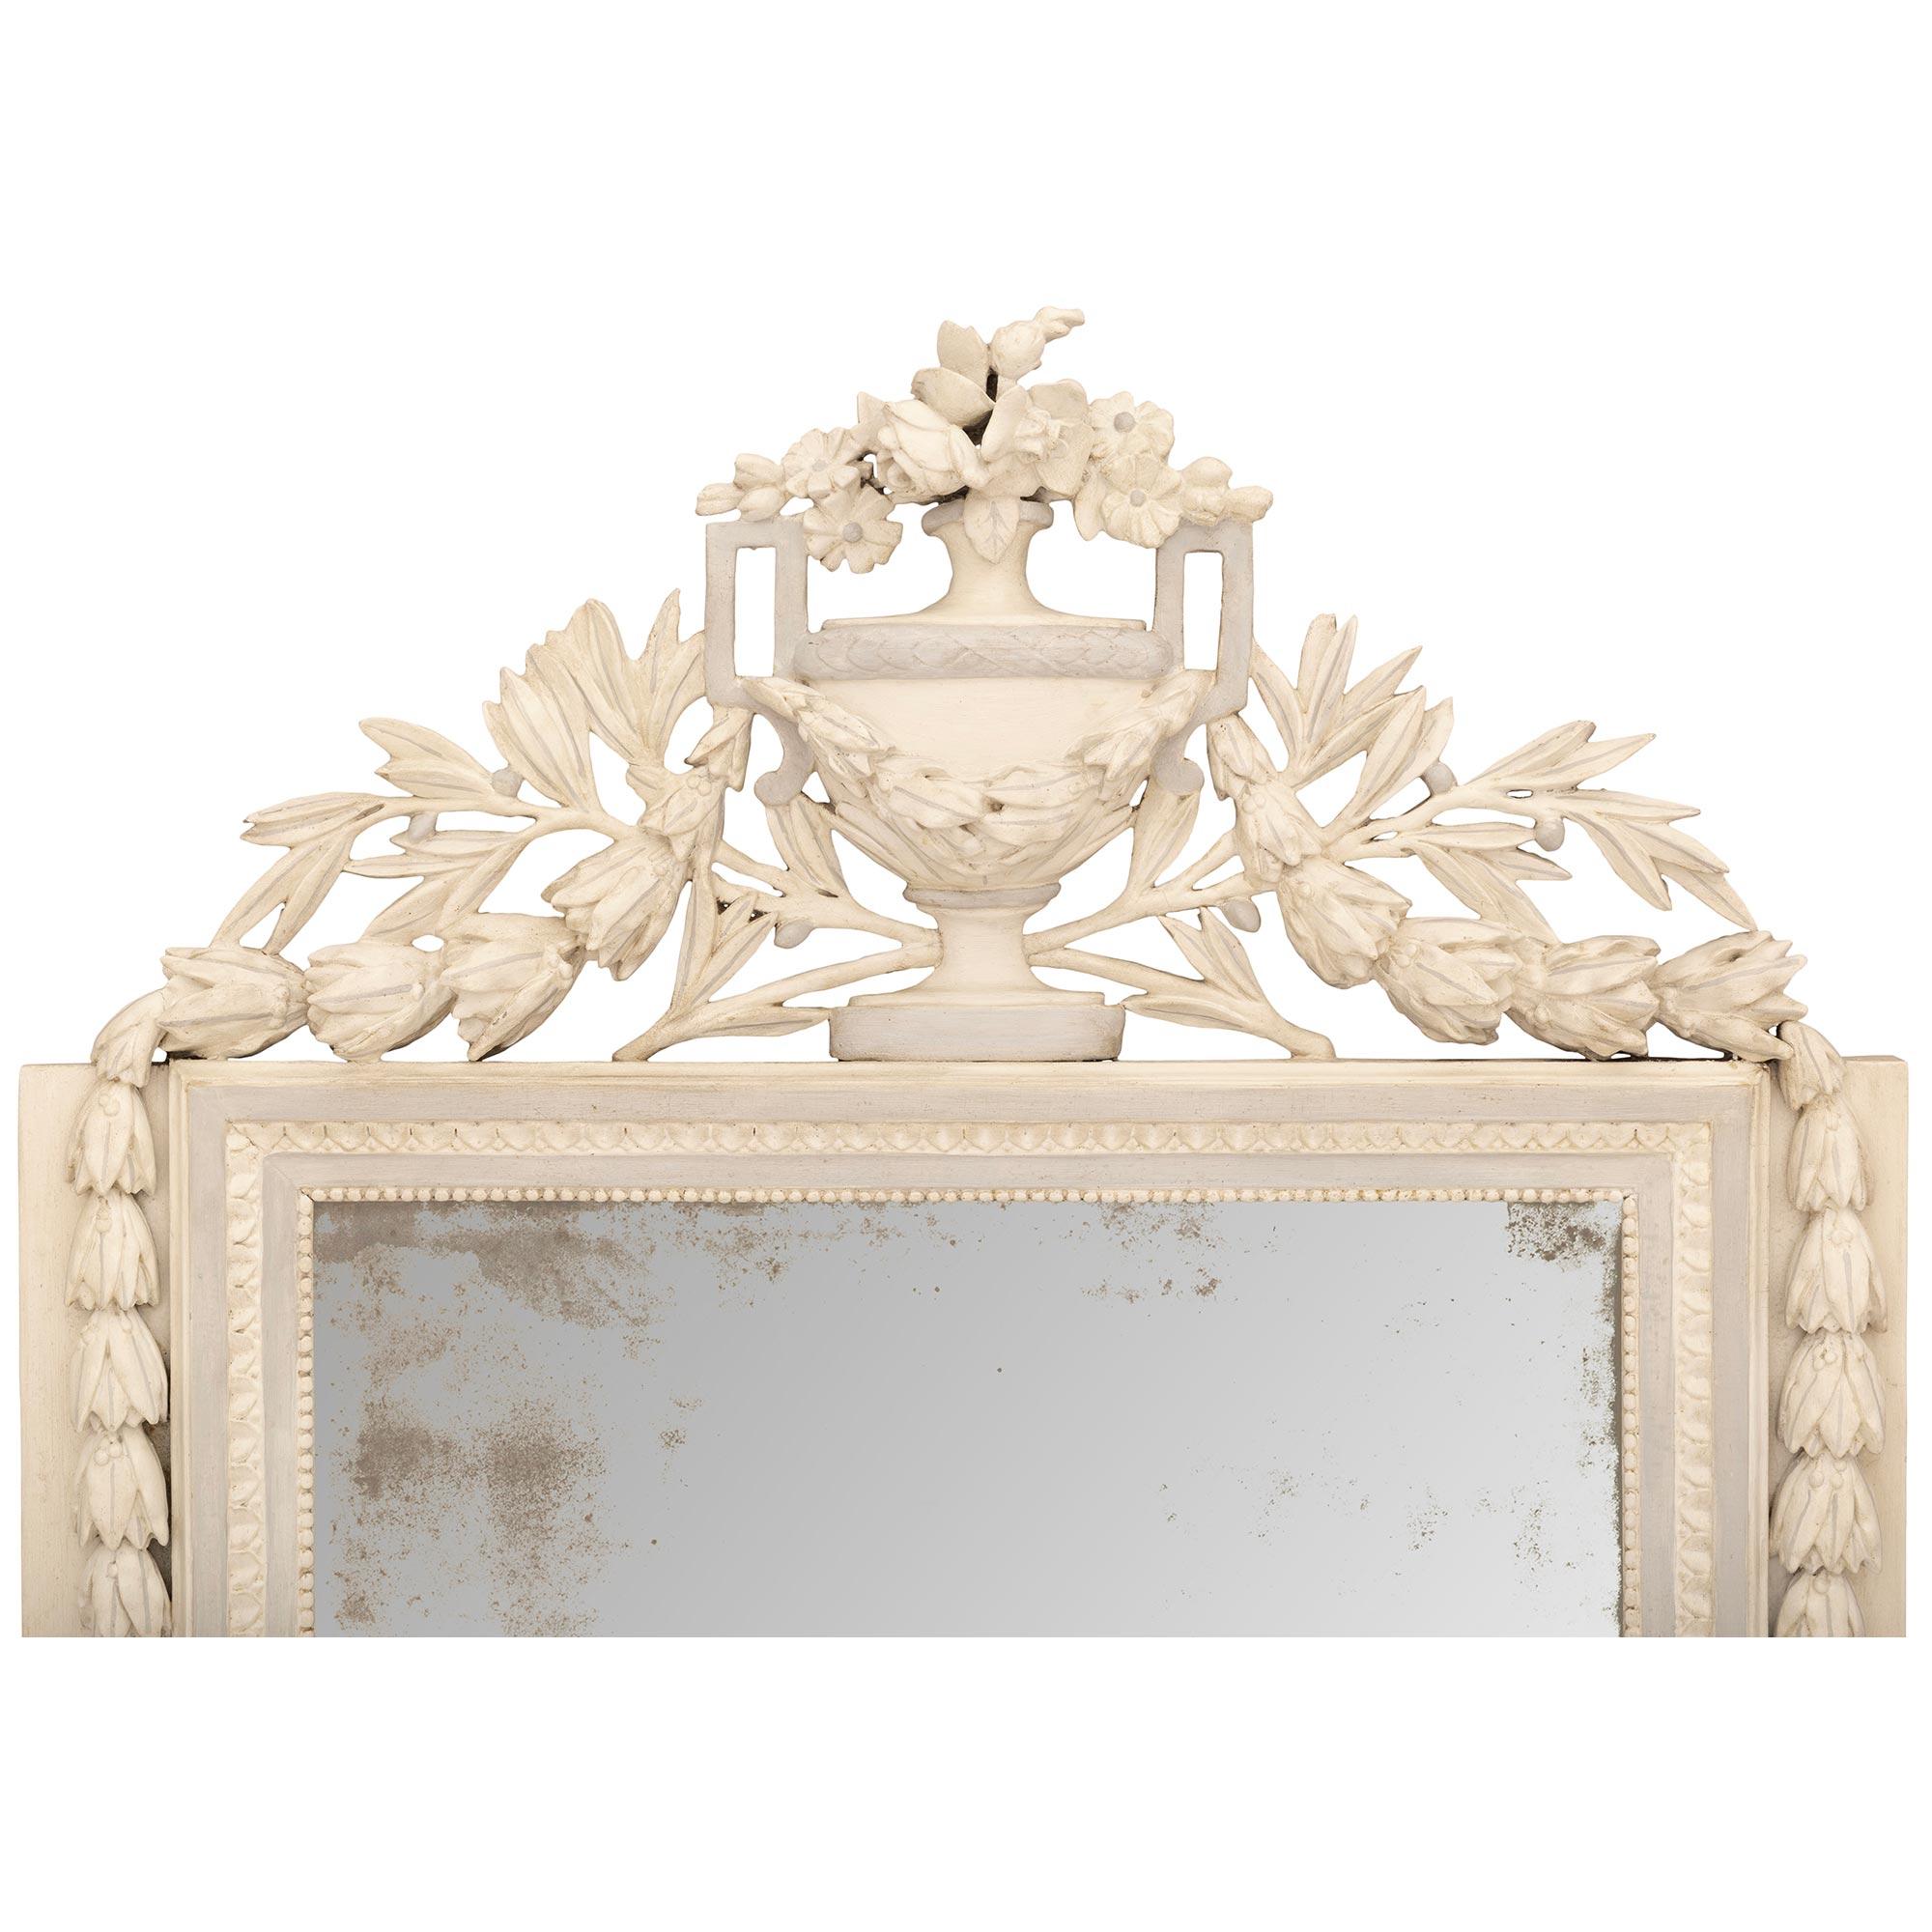 Un miroir unique et très décoratif en bois patiné d'époque Louis XVI du XVIIIe siècle. La plaque de miroir d'origine est placée dans un cadre patiné blanc cassé et est soutenue par des rosettes isolées dans des blocs sculptés à l'eau-forte. Entre